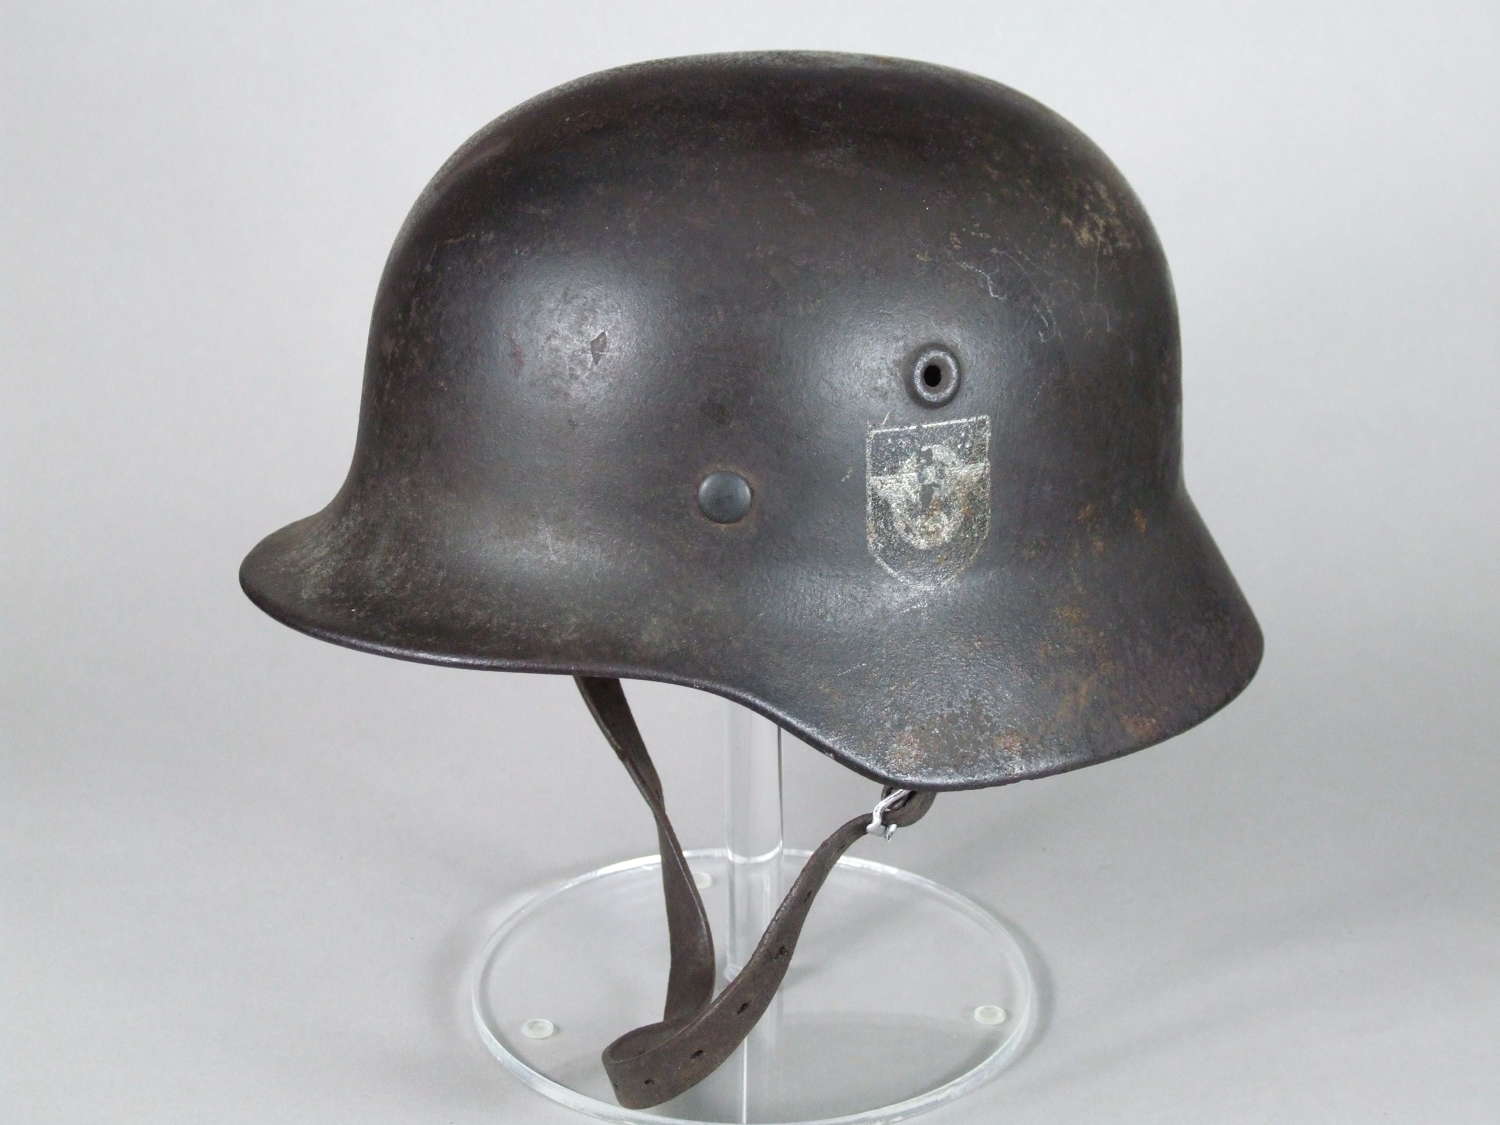 Double Decal Q64 Police M40 helmet